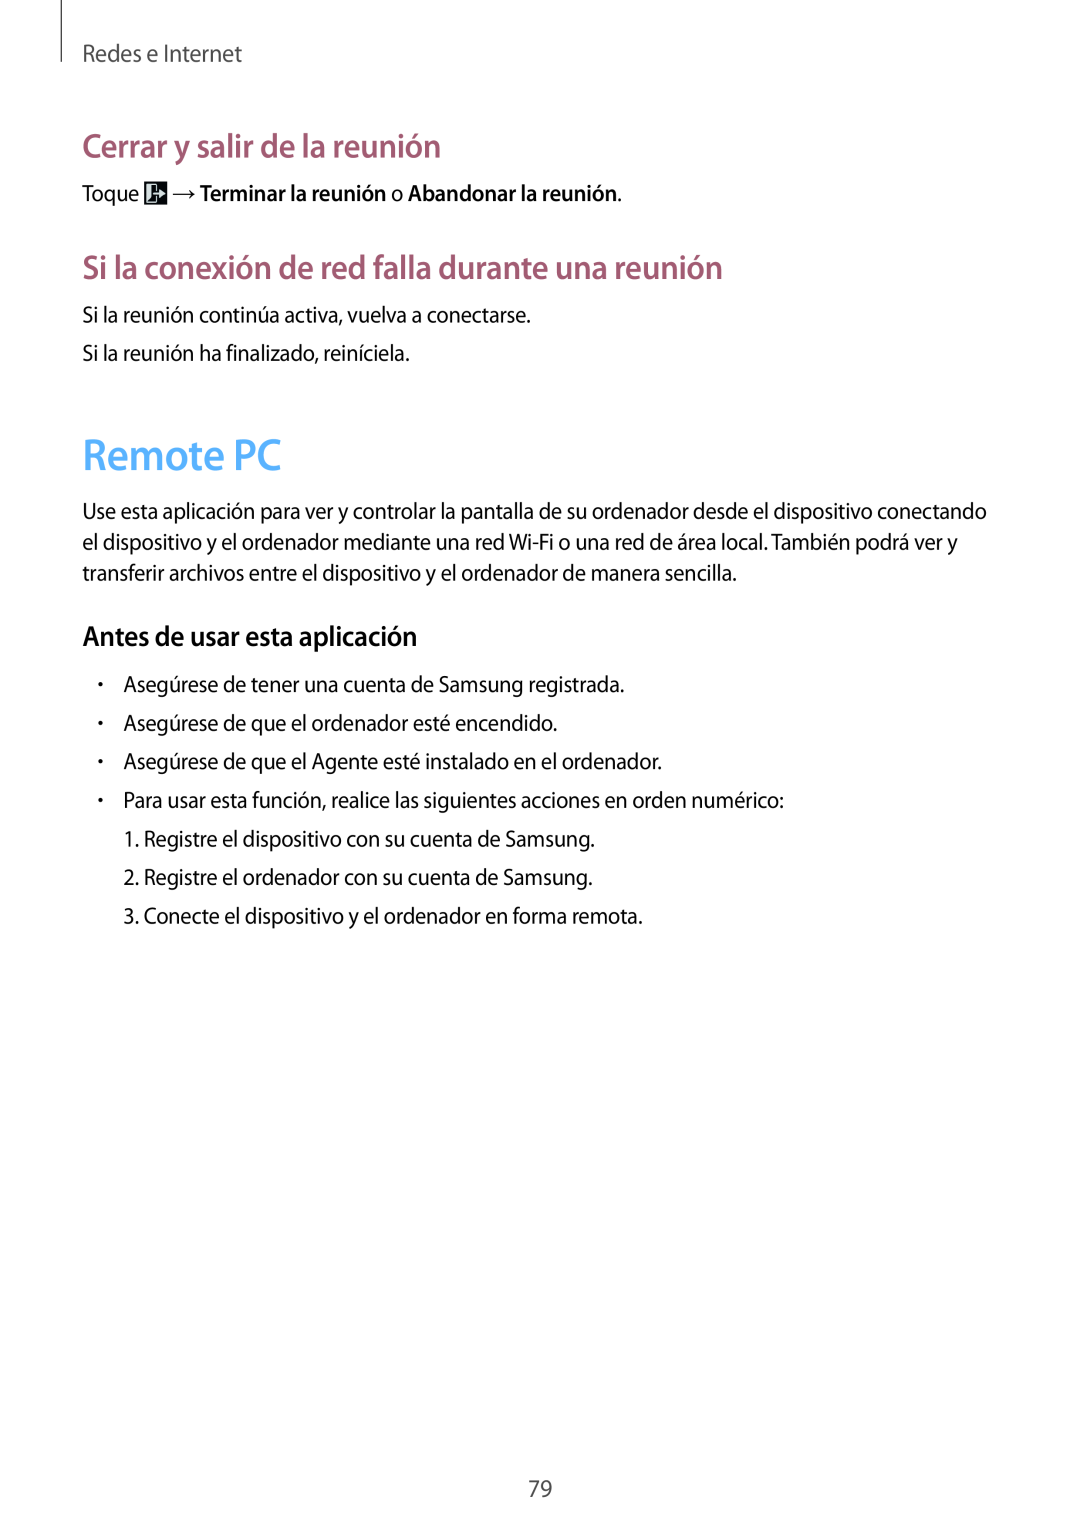 Samsung SM-T320NZWAXEO manual Remote PC, Toque →Terminar la reunión o Abandonar la reunión, Cerrar y salir de la reunión 